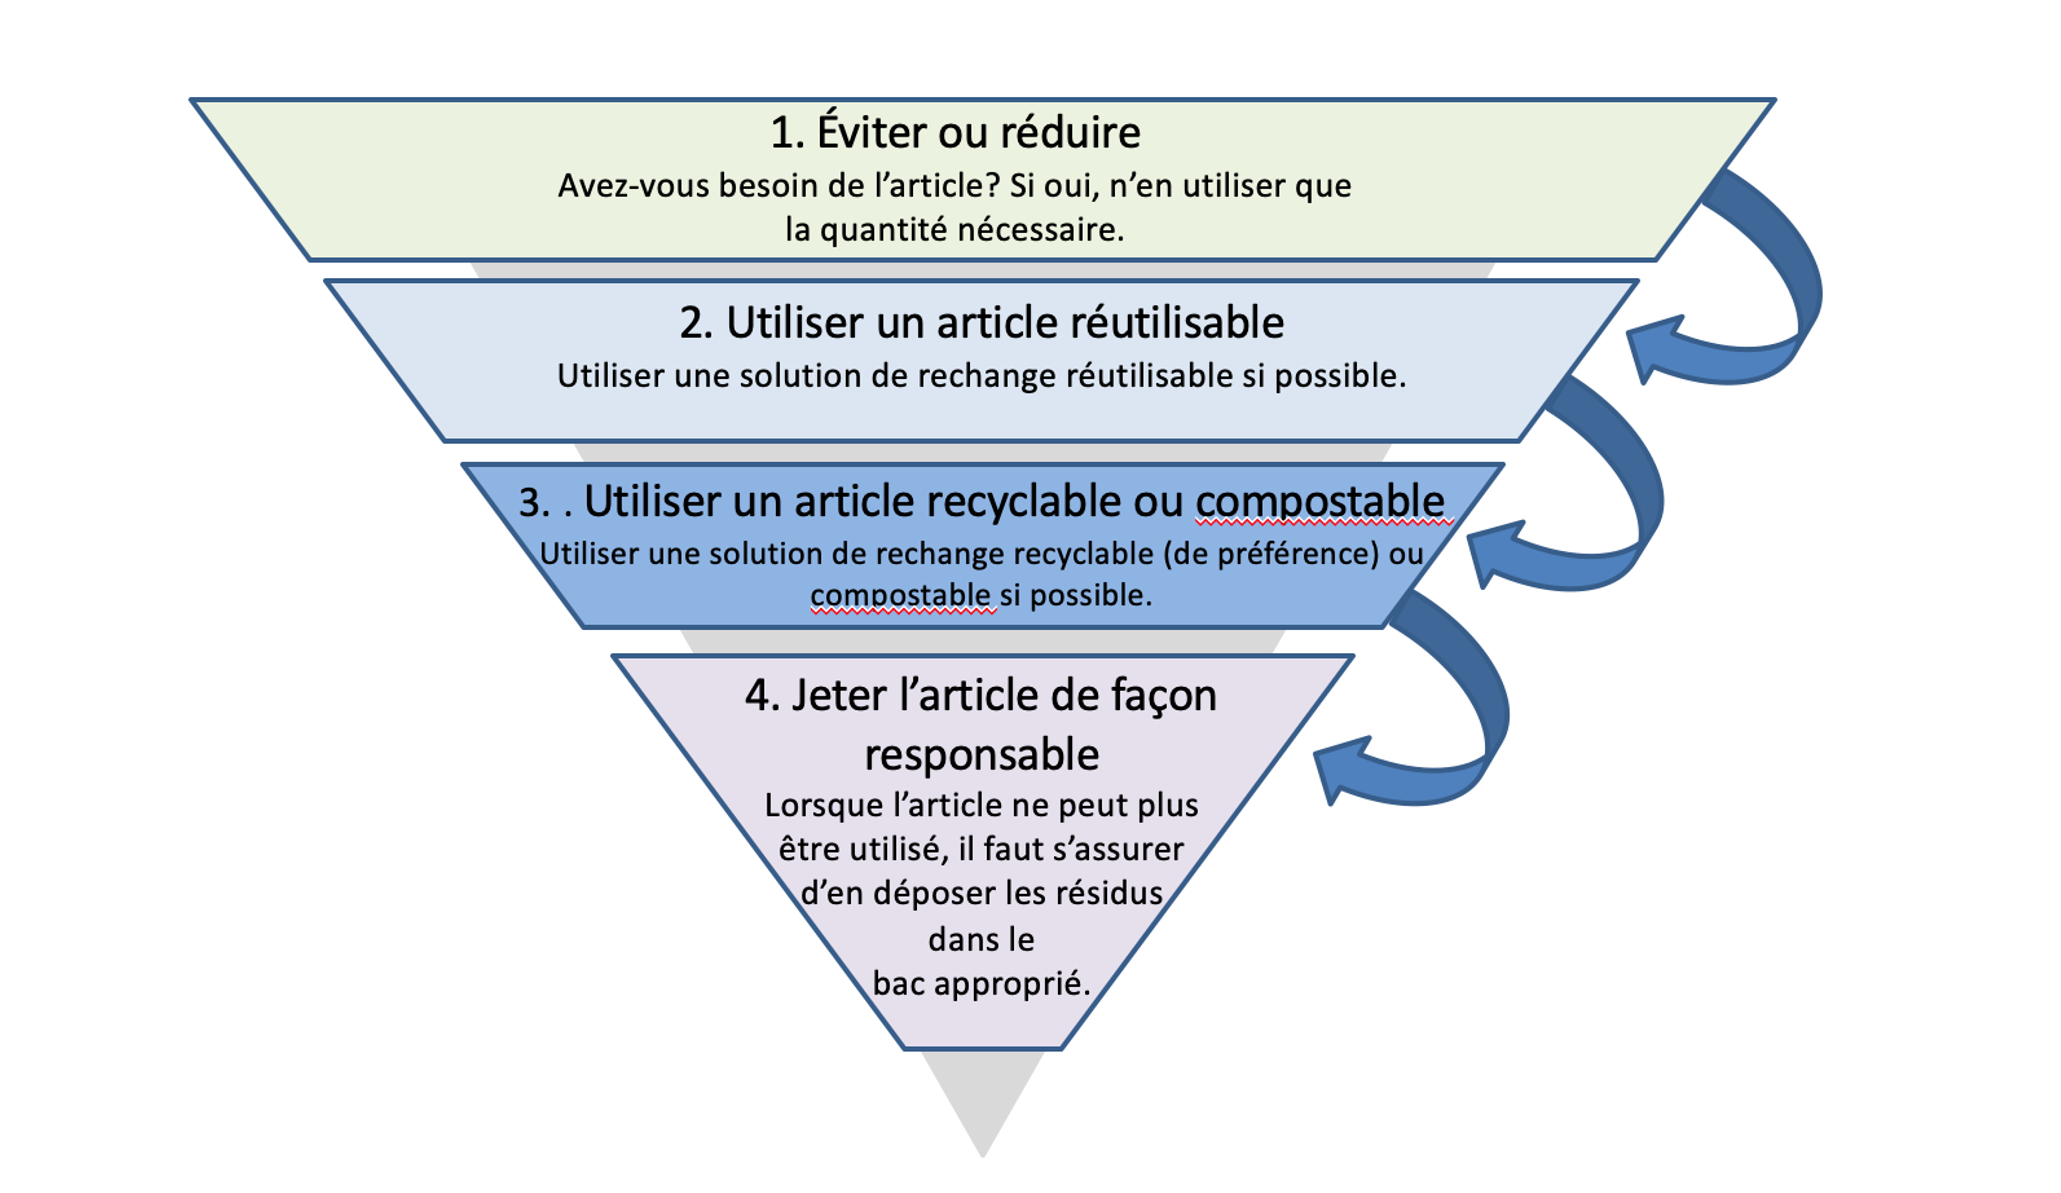 Hiérarchie de gestion des déchets : solutions pour réduire les déchets provenant d’articles à usage unique. Version textuelle ci-haut.